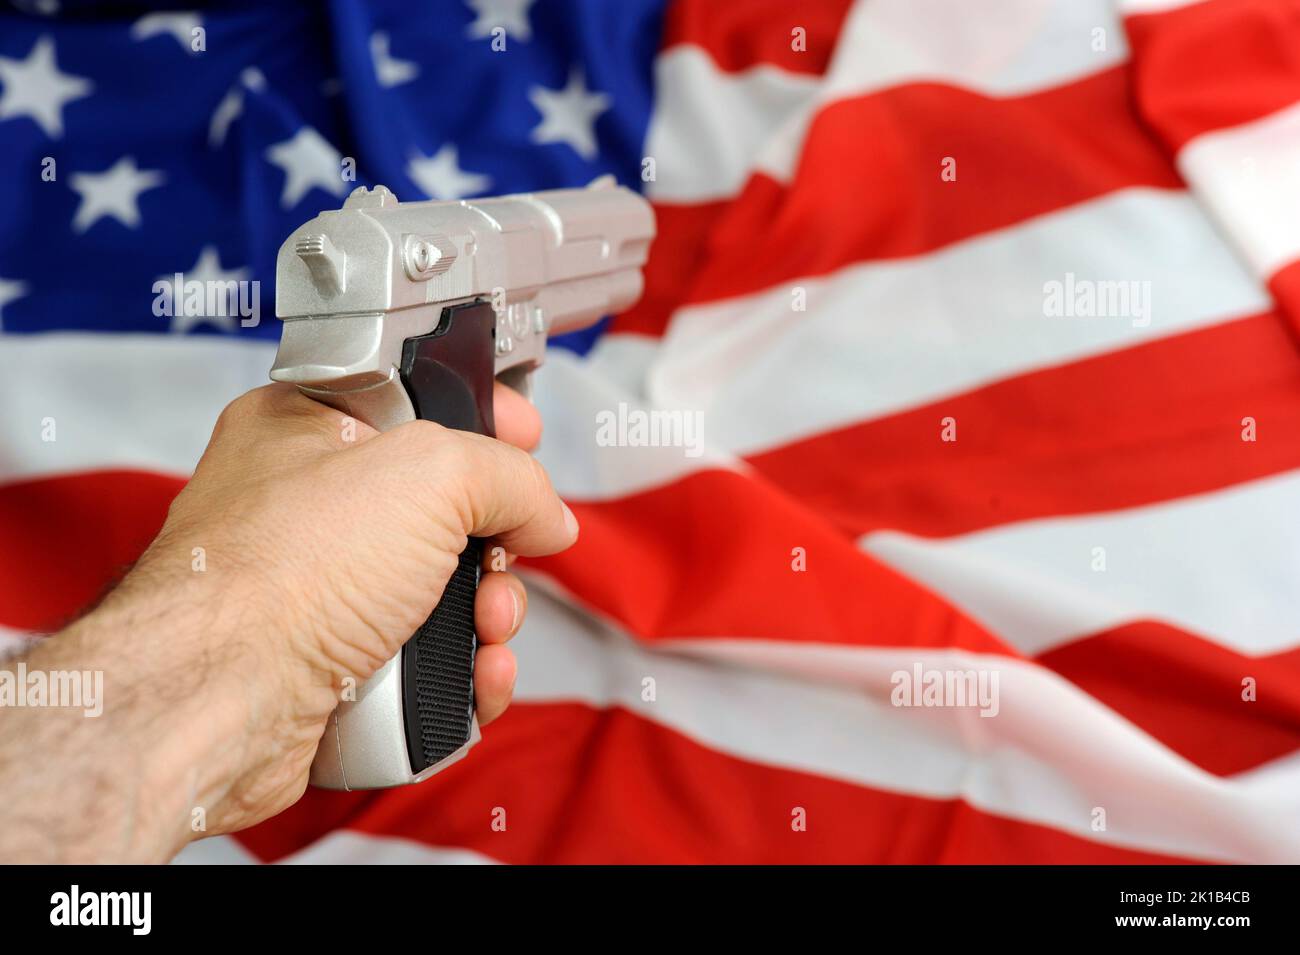 Bandiera degli Stati Uniti e della pistola, problema di controllo delle armi negli Stati Uniti Foto Stock